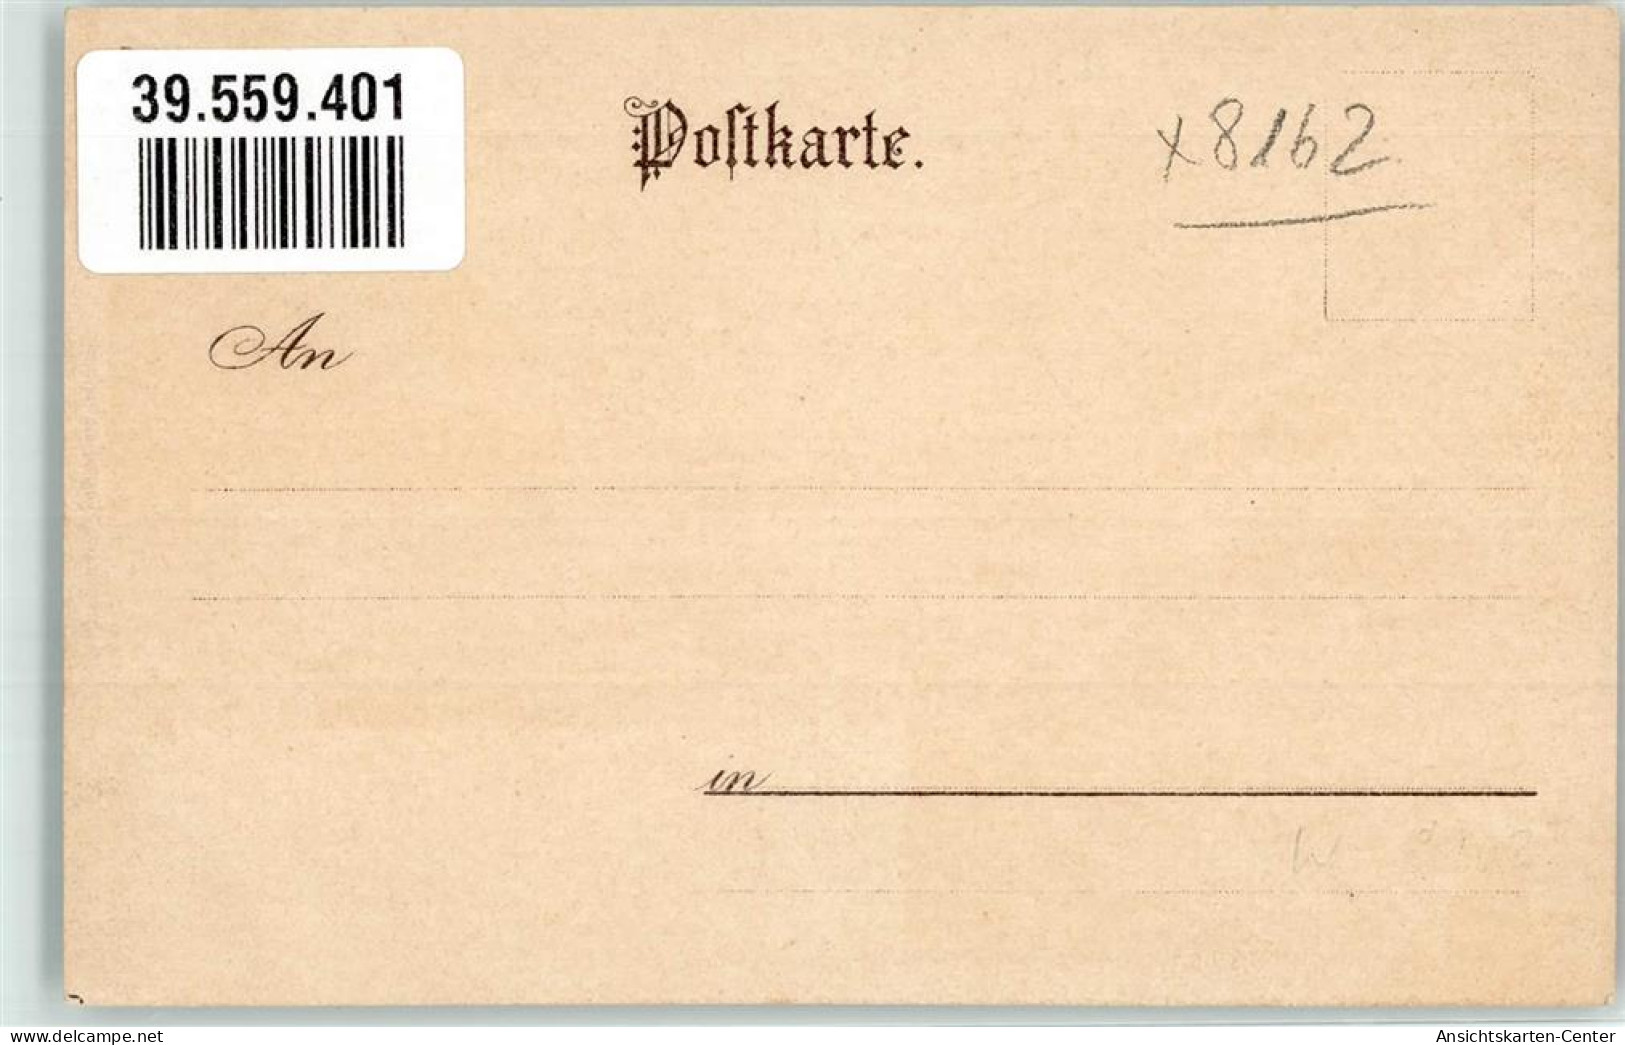 39559401 - Schliersee - Schliersee